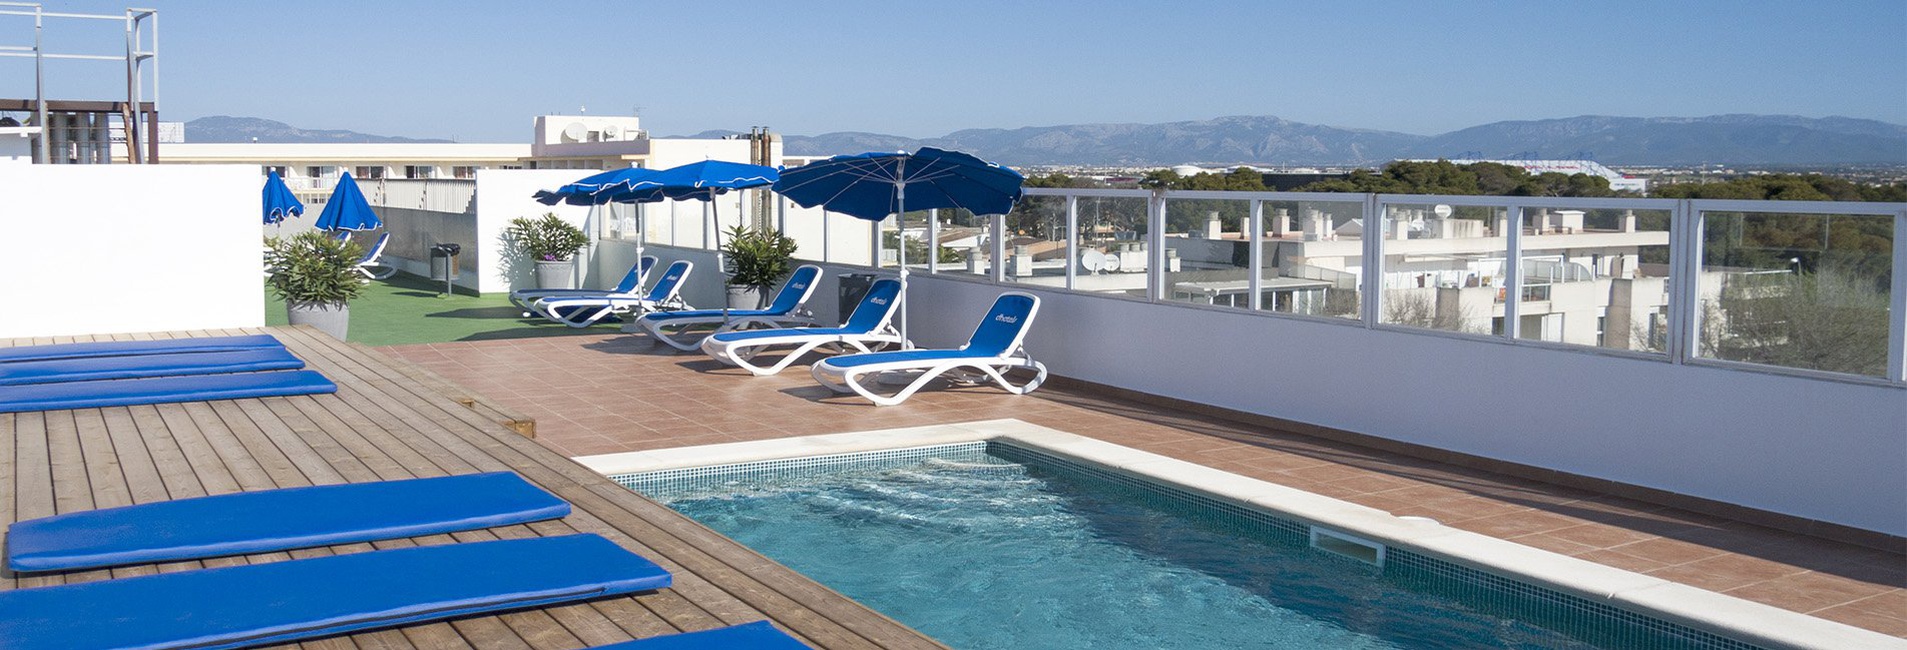 piscina Marbel Hotel Ca’n Pastilla